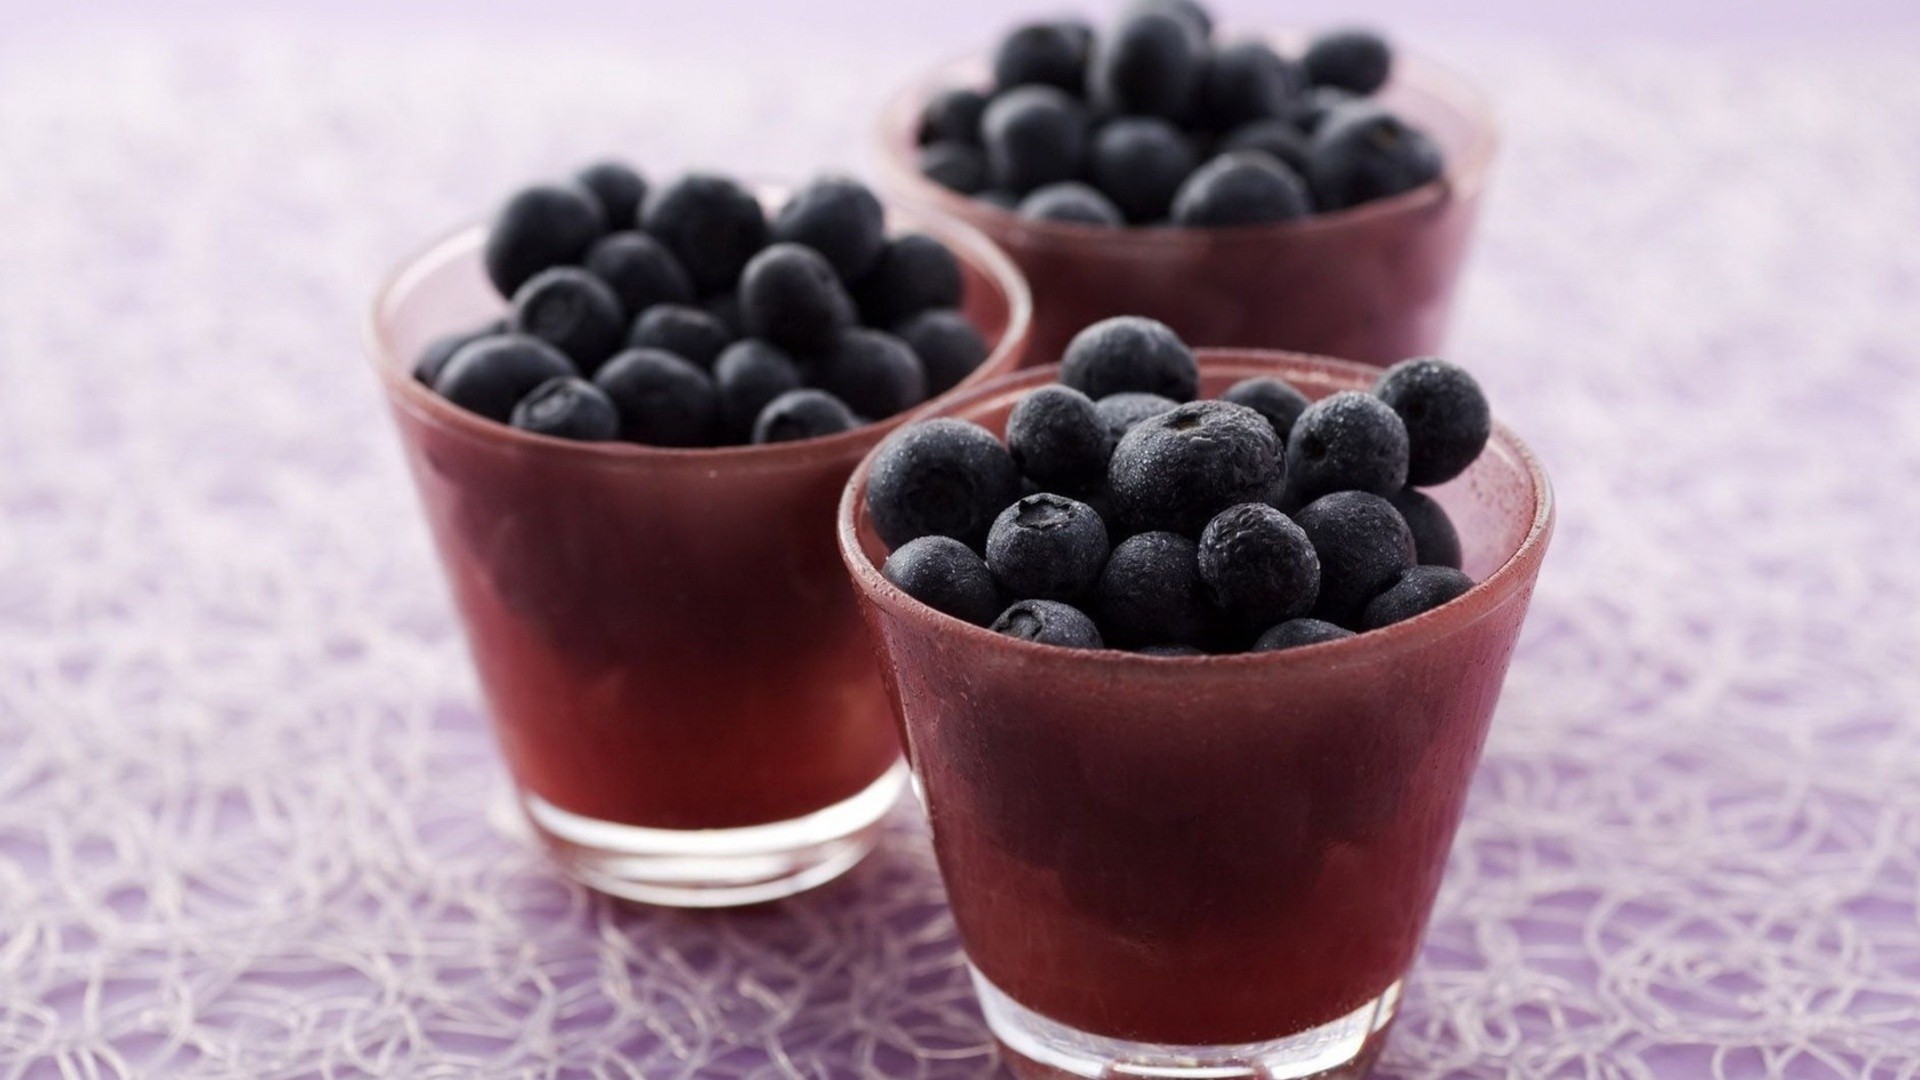 General 1920x1080 blueberries food dessert fruit berries